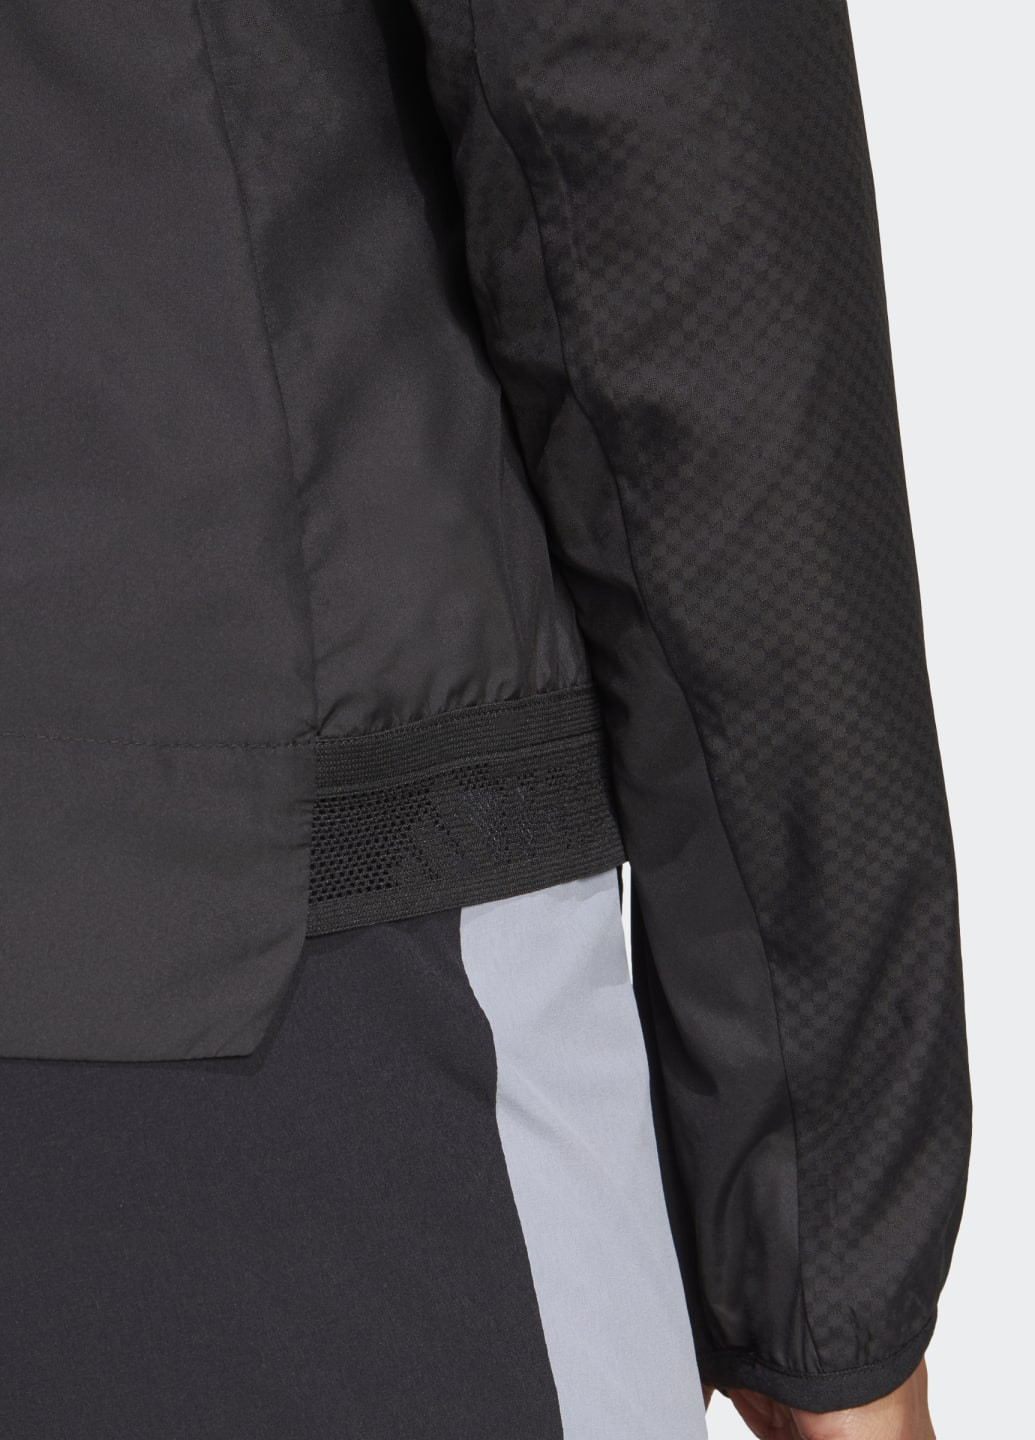 Чорна демісезонна куртка terrex xperior windweav adidas